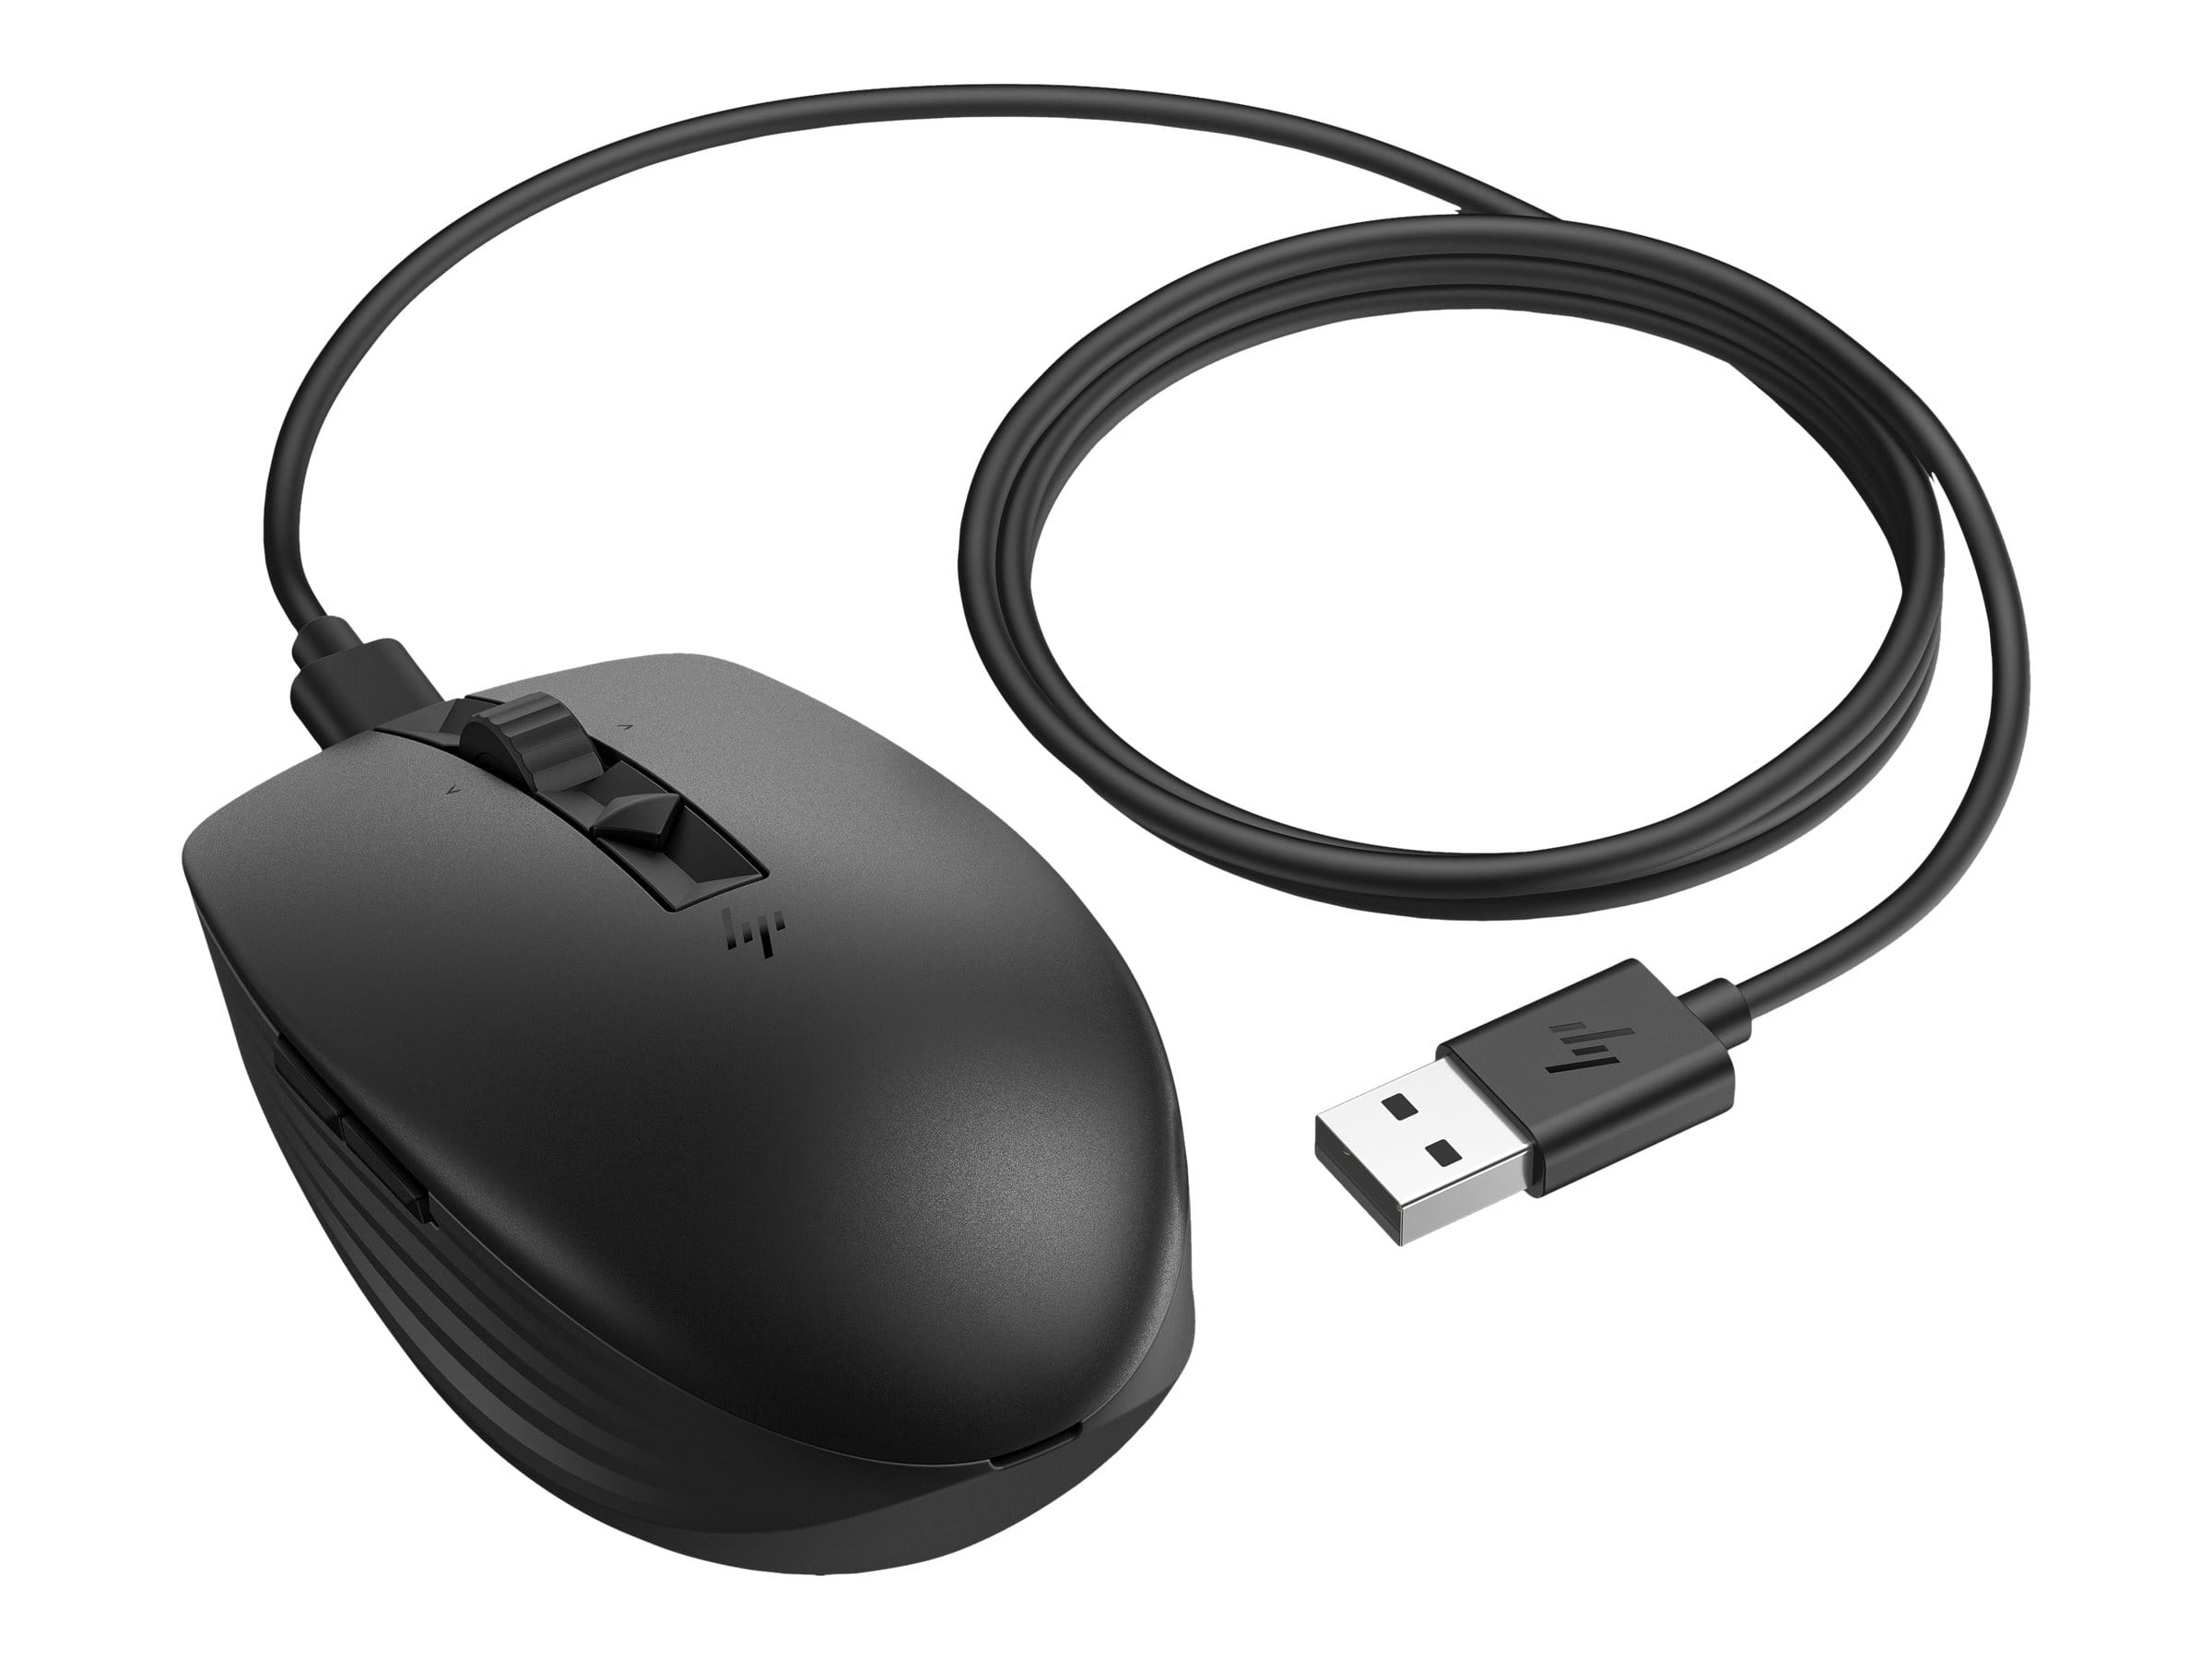 HP 715 - Maus - mehrere Geräte, wiederaufladbar - 7 Tasten - kabellos, kabelgebunden - 2.4 GHz, Bluetooth 3.0 - kabelloser Empfänger (USB)